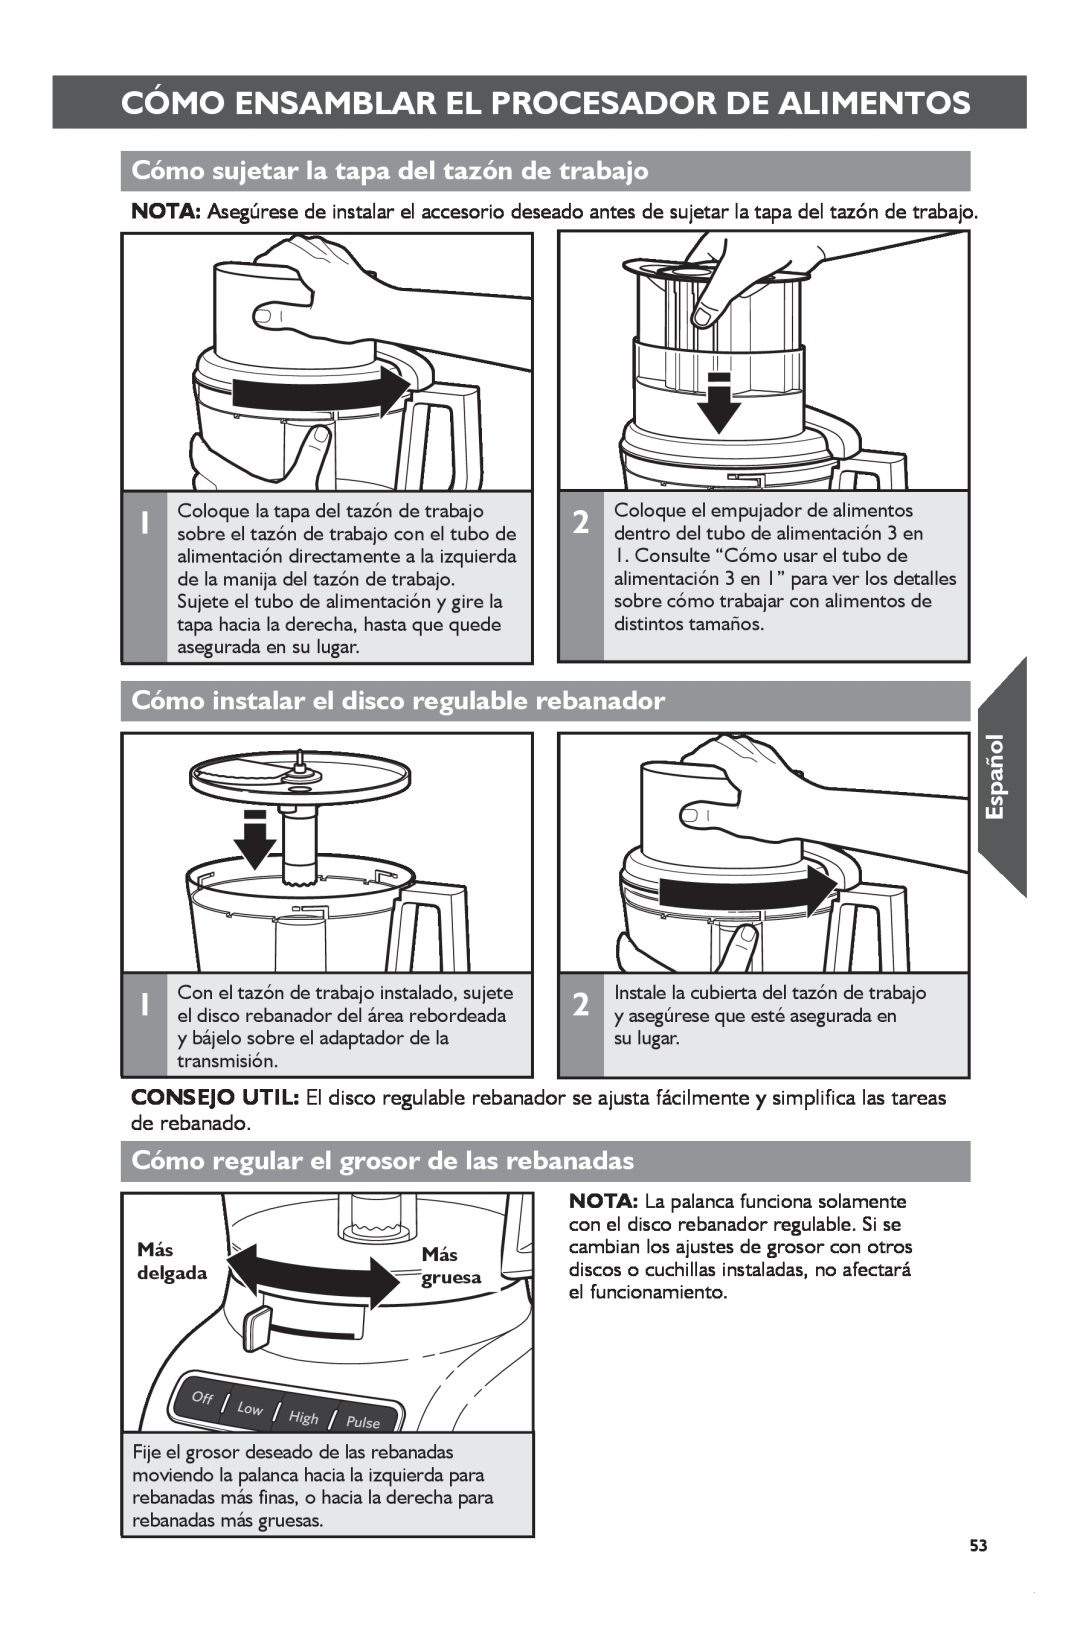 KitchenAid KFP1133 manual Cómo Ensamblar El Procesador De Alimentos, Cómo sujetar la tapa del tazón de trabajo, Español 